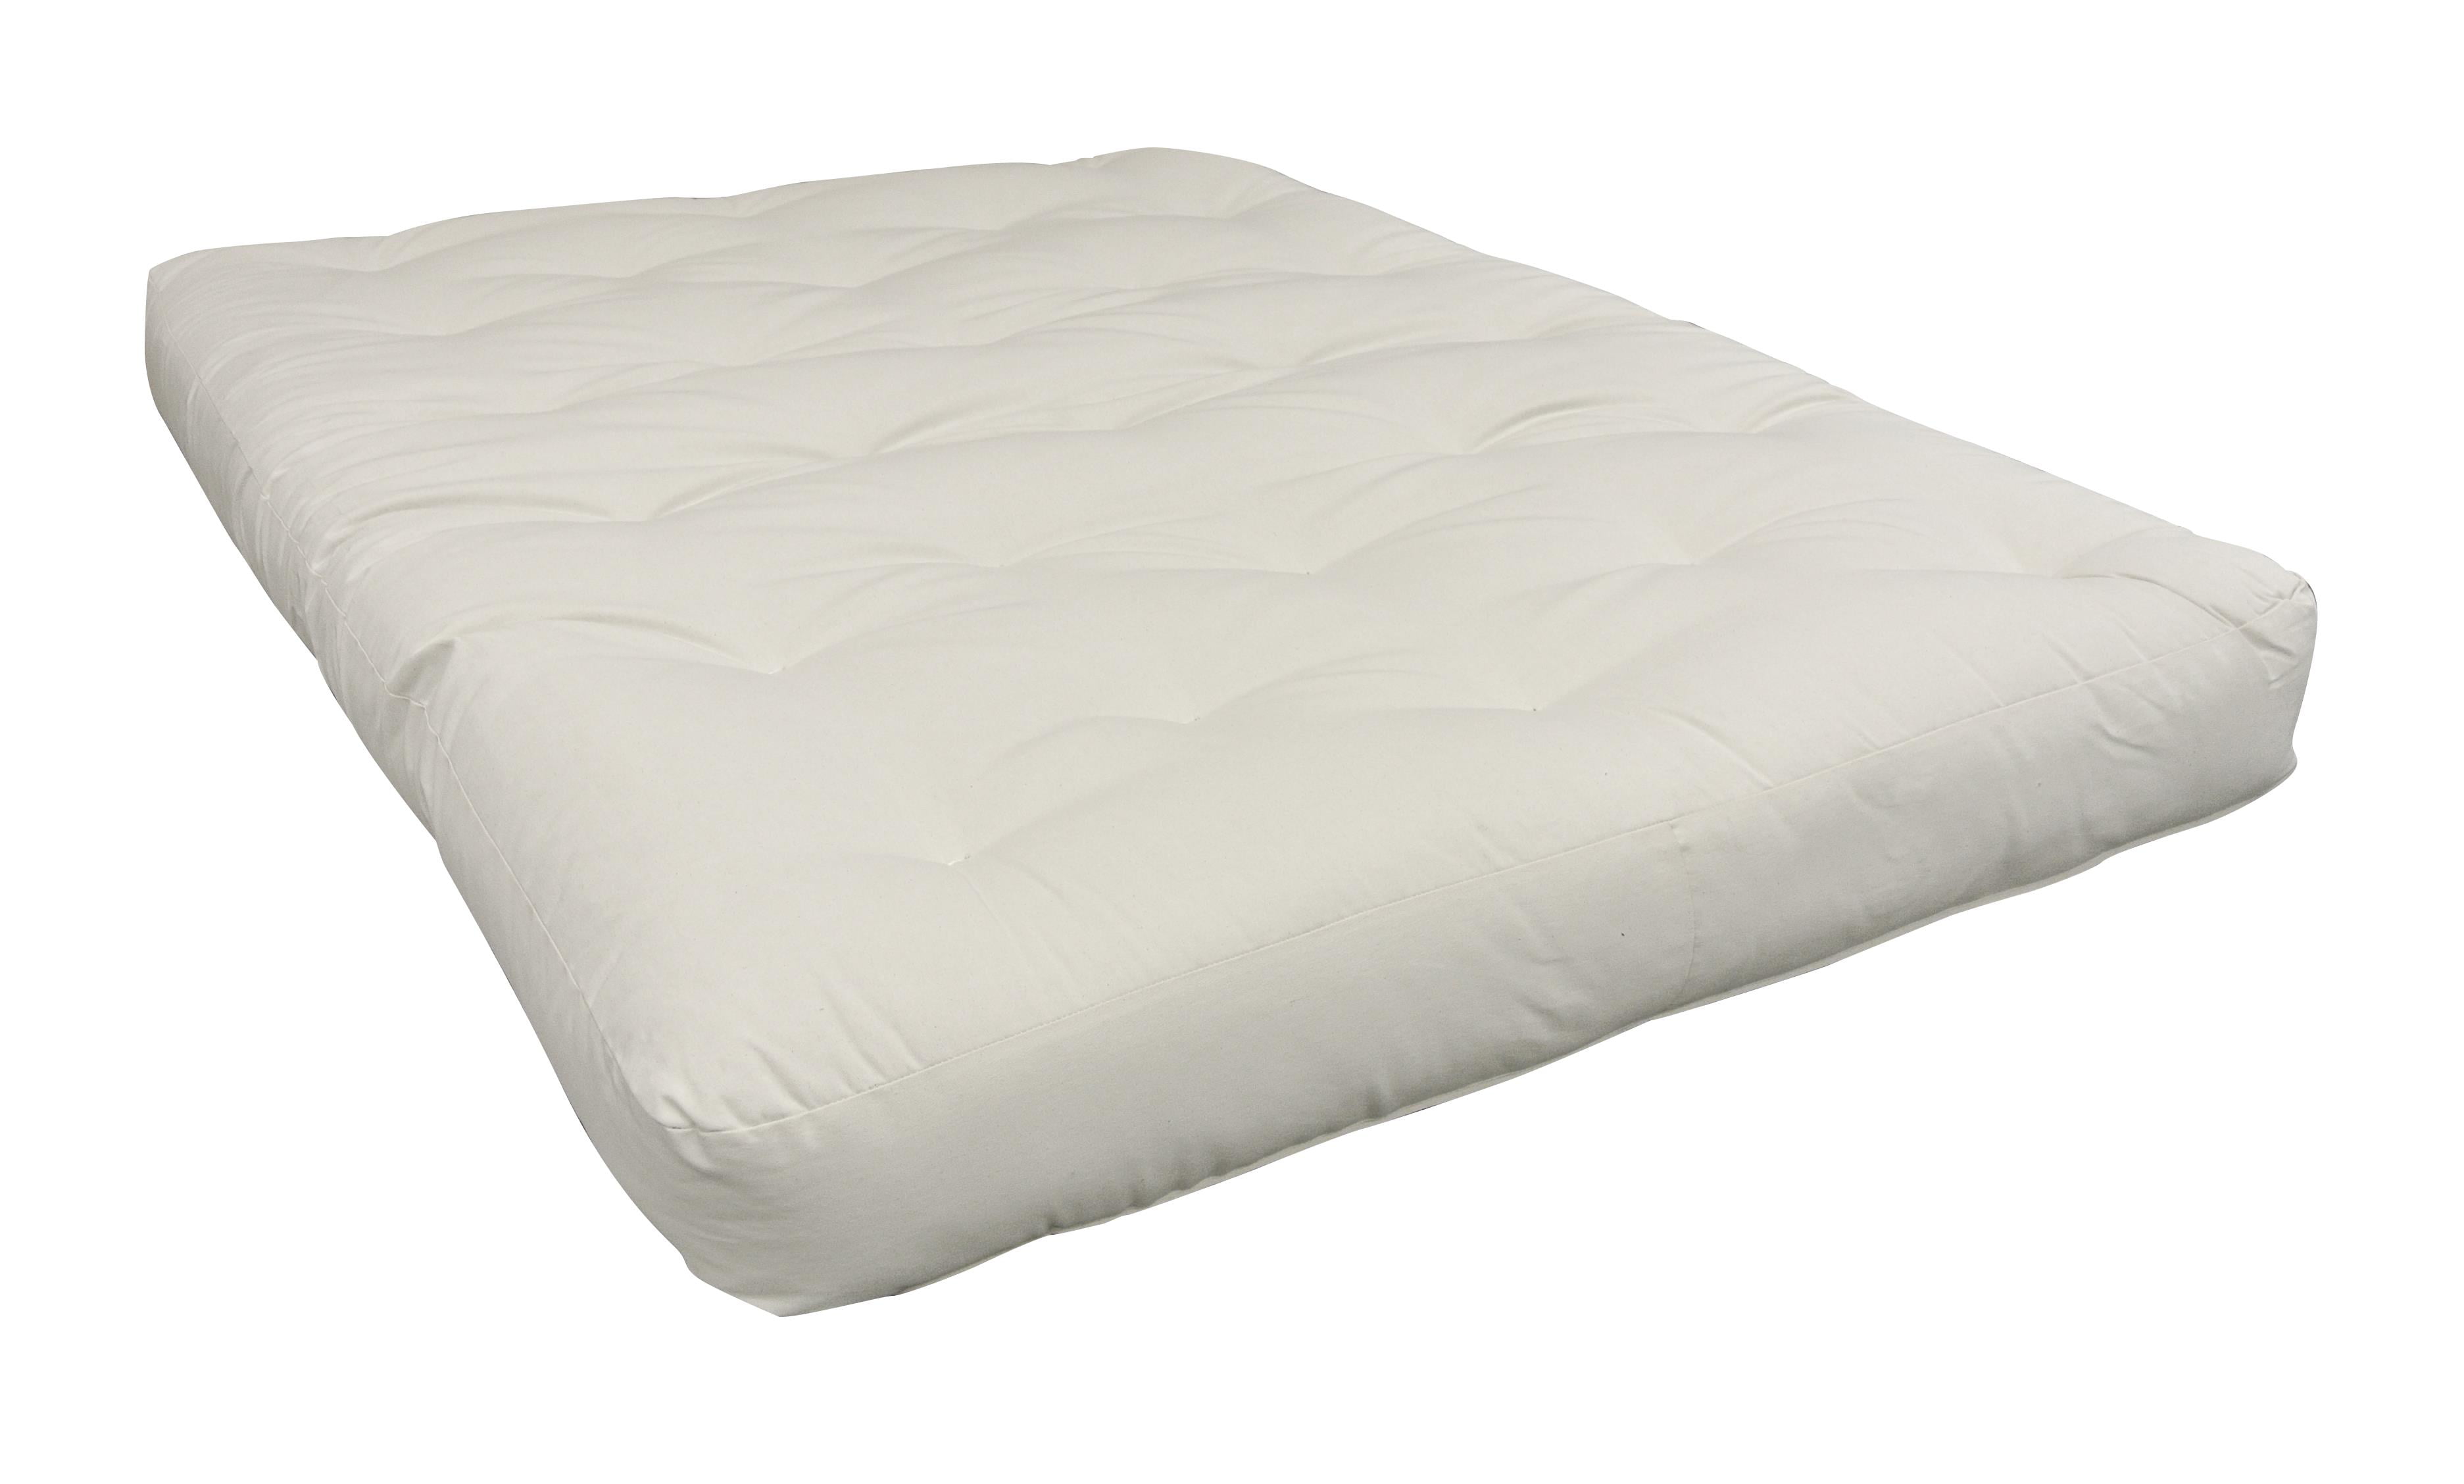 foam for under futon mattress